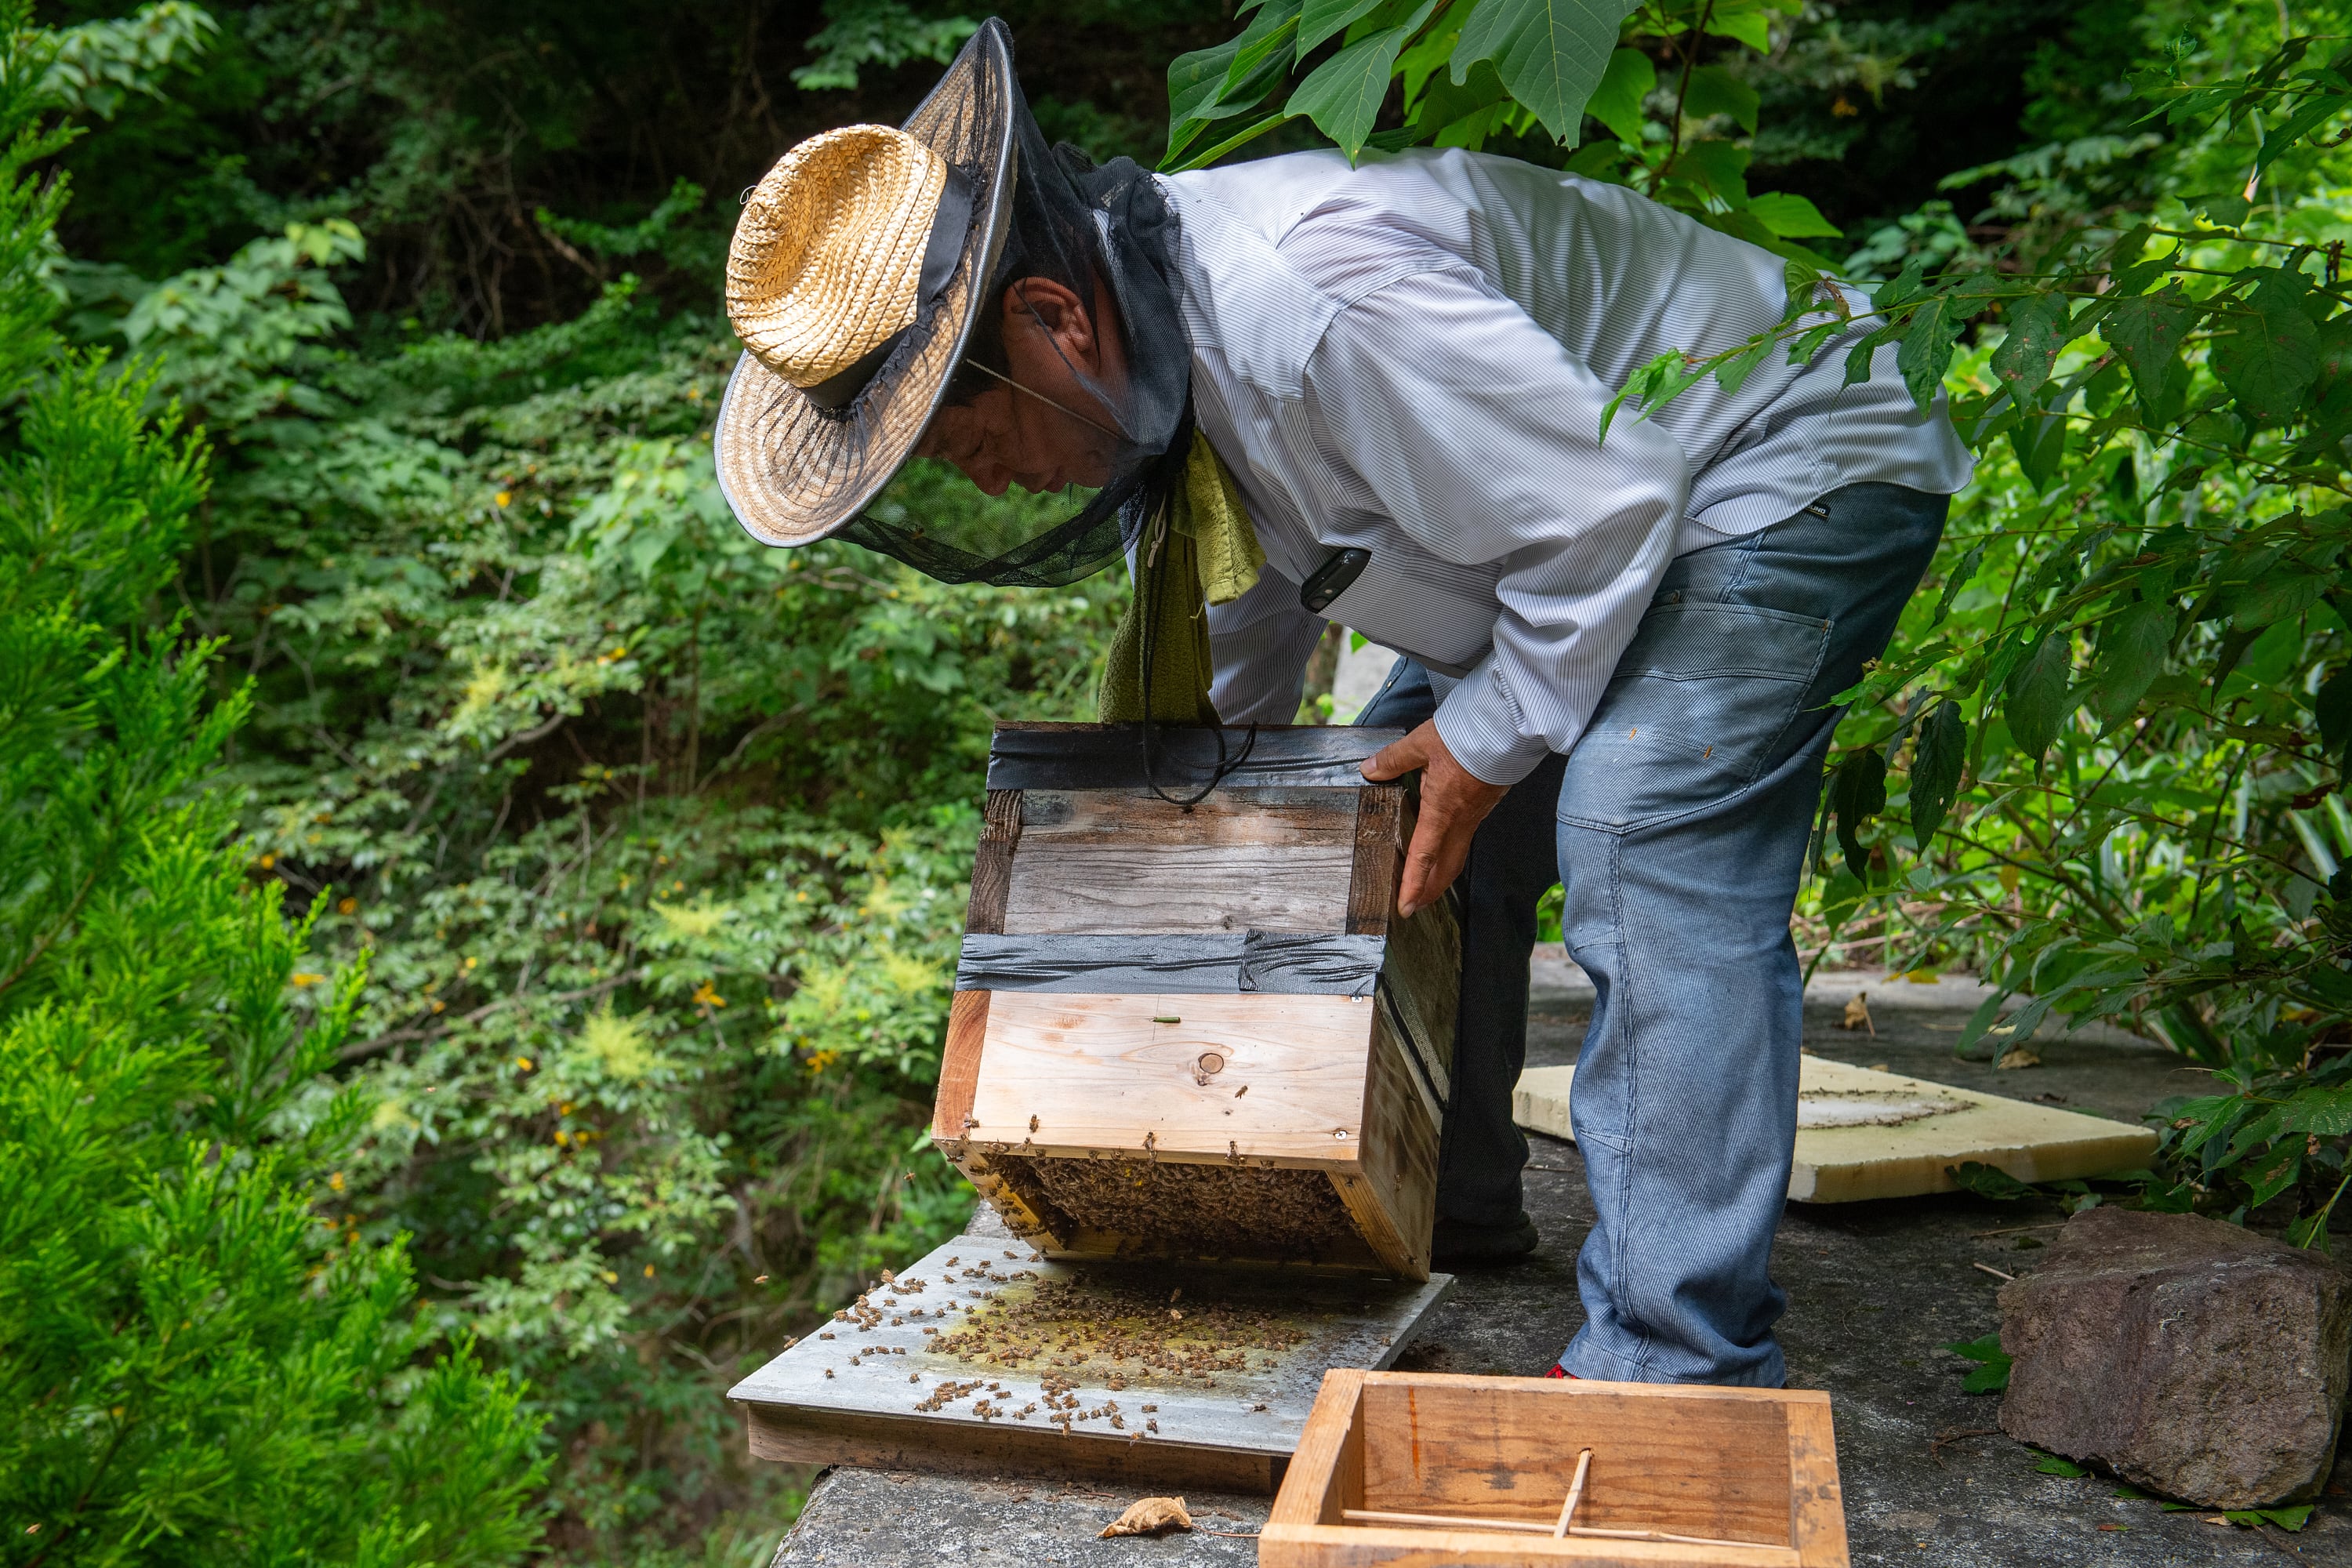 延寿は熊本県菊池市にある、世界有数の水脈の一つ菊地水源で育った木の花の蜜を、 日本ミツバチが採蜜した蜂蜜から作られています。
採蜜期間は年に秋の一か月間のみで、西洋ミツバチとは違い、複数の花の蜜を採蜜した百花蜜の為、花の味ではなく山の味、それをニ回濾過し、非加熱でそのまま瓶に閉じ込めました。
喉越しが良くフルーティな味わいです。
日本ミツバチはデリケートなため、農薬や気候変動など様々な事象により、全滅が危惧されております。また気まぐれで、住み心地が良い場所にしか巣を作らない為、養蜂が難しく、採蜜量が少ない為日本ミツバチの蜂蜜は滅多に市場に出回りません。
そんな日本ミツバチを守り、増やす為、溜まった蜂蜜の一部を頂いて商品化しております。
川上家の巣箱は、ハチの運ぶ蜜に農薬などの異物混入を避けるため、日本ミツバチの飛行距離である二キロ圏内に、田畑がなく人や車も入れないない山奥の崖や斜面に、命がけで設置しております。
パッケージについては、日本ミツバチの重箱式巣箱をイメージし、百花蜜のもつ高い殺菌力のため、専用の木製スプーンをお付けしました。
「もし地球上からハチが消えたなら、人間は四年しか生きることができない」というアルベルト・アインシュタインの言葉もありますが、日本ミツバチを守る事は大変重要な事です。
更に地方創生、後継者問題など様々な課題の解決に加えて、熊本県菊地市の魅力を広めるために商品化しました。